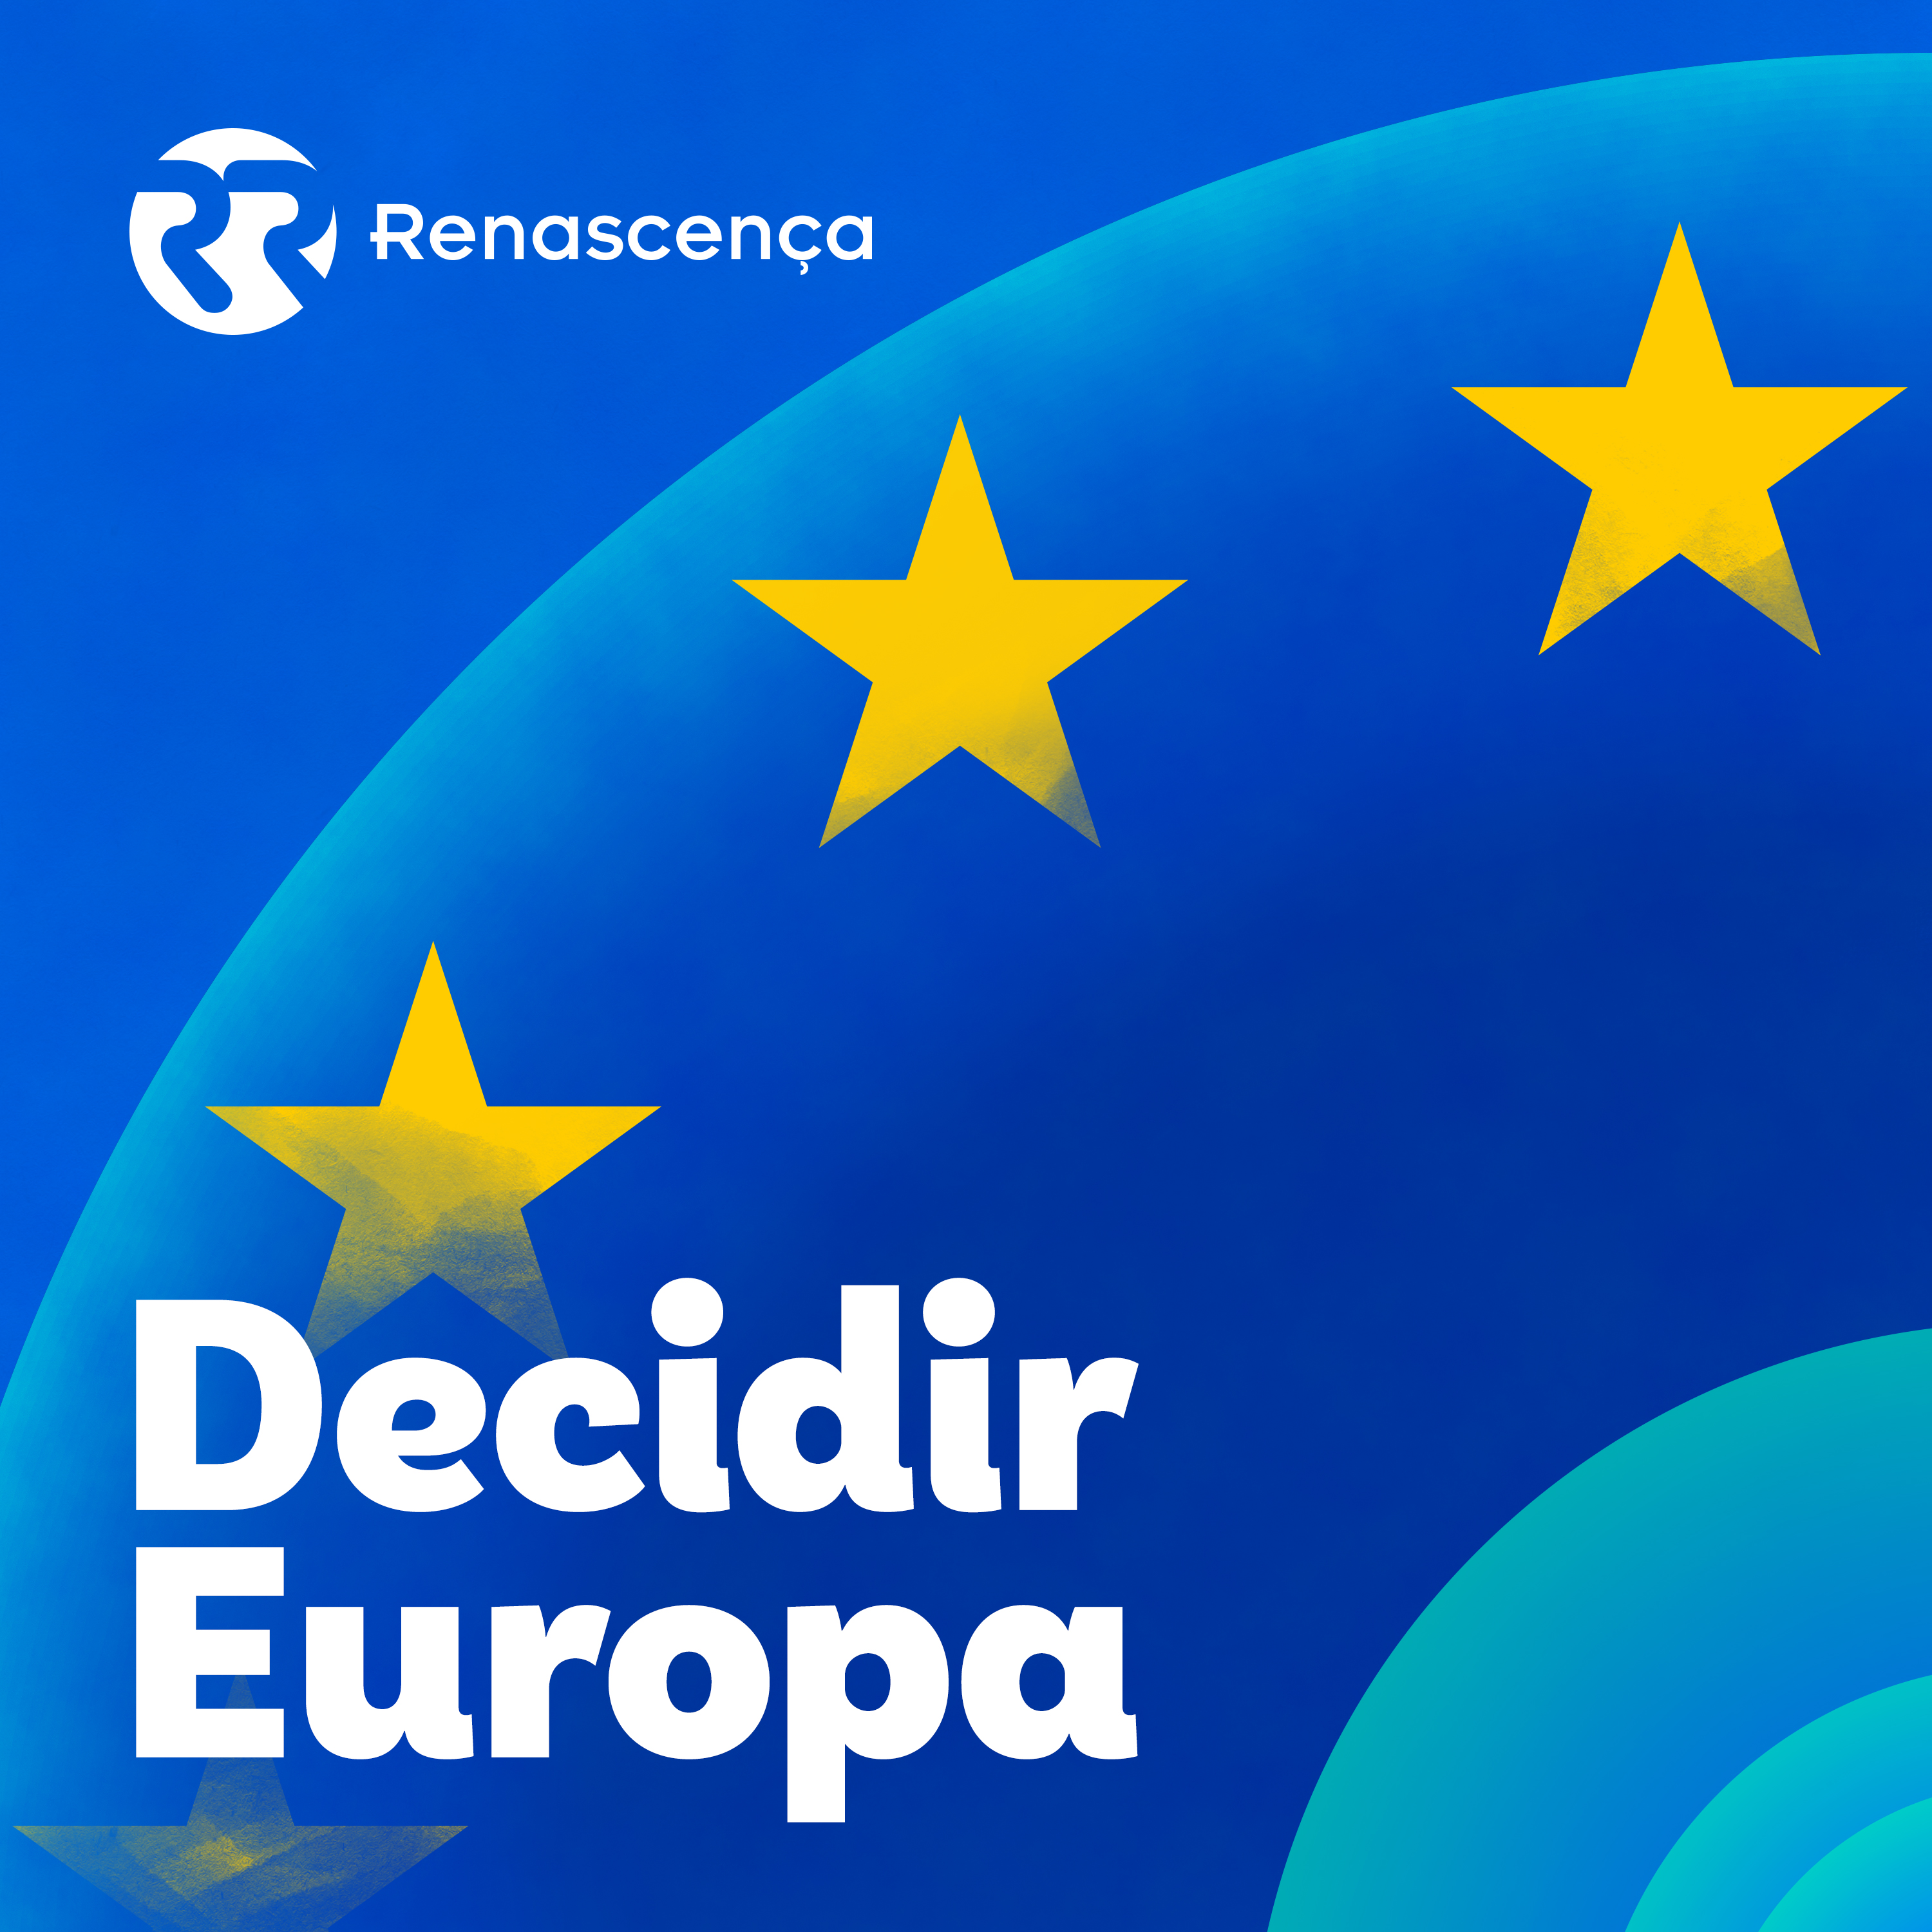 Renascença - Decidir Europa